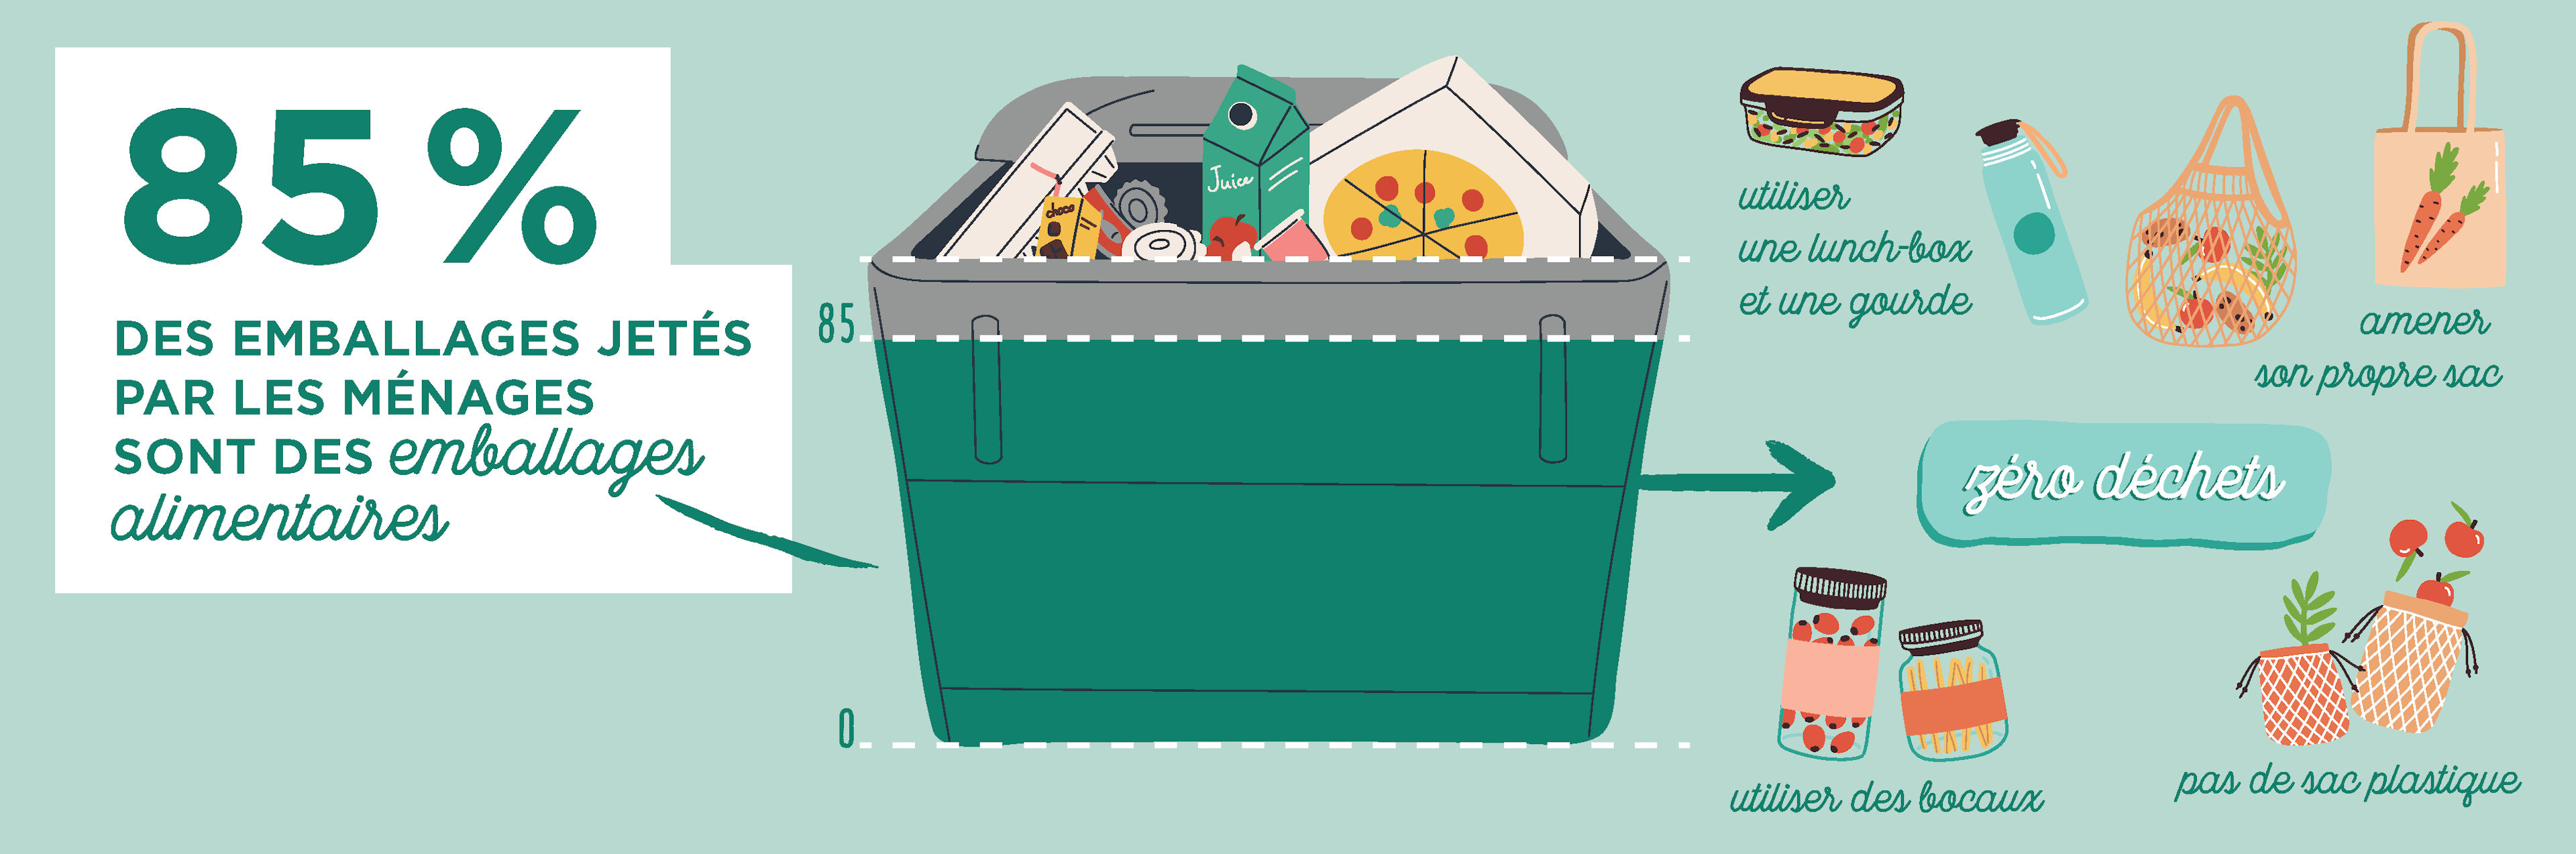 Infographie : 85% des emballages jetés par les ménages sont des emballages alimentaires